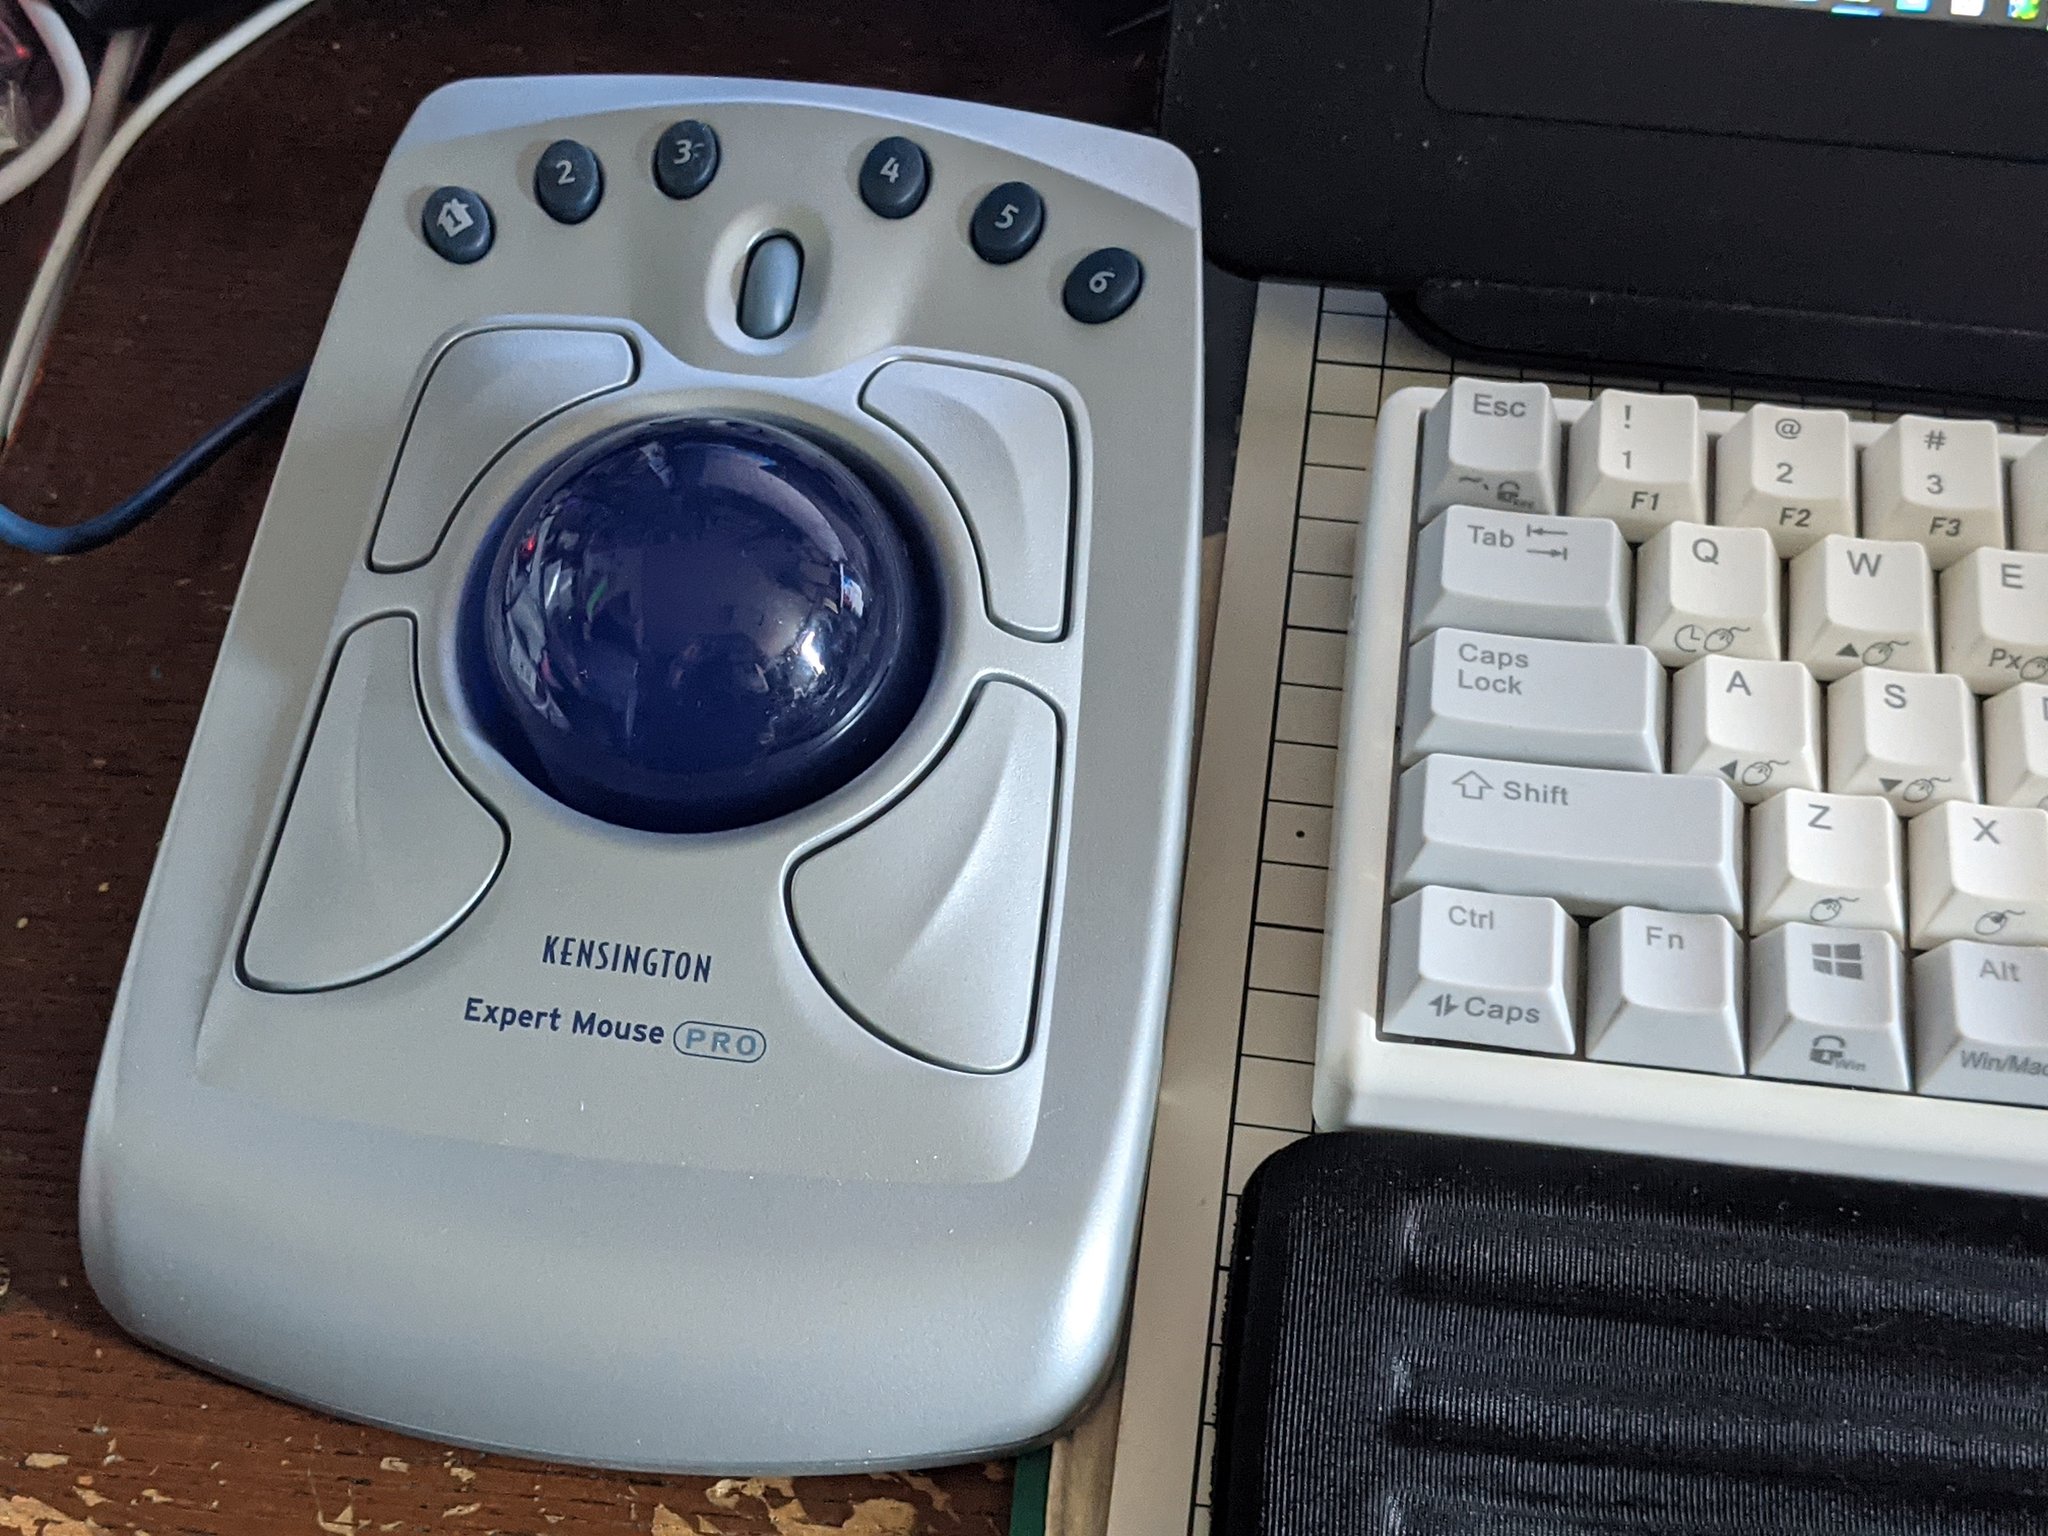 Kensington Expert Mouse pro r8Xjb